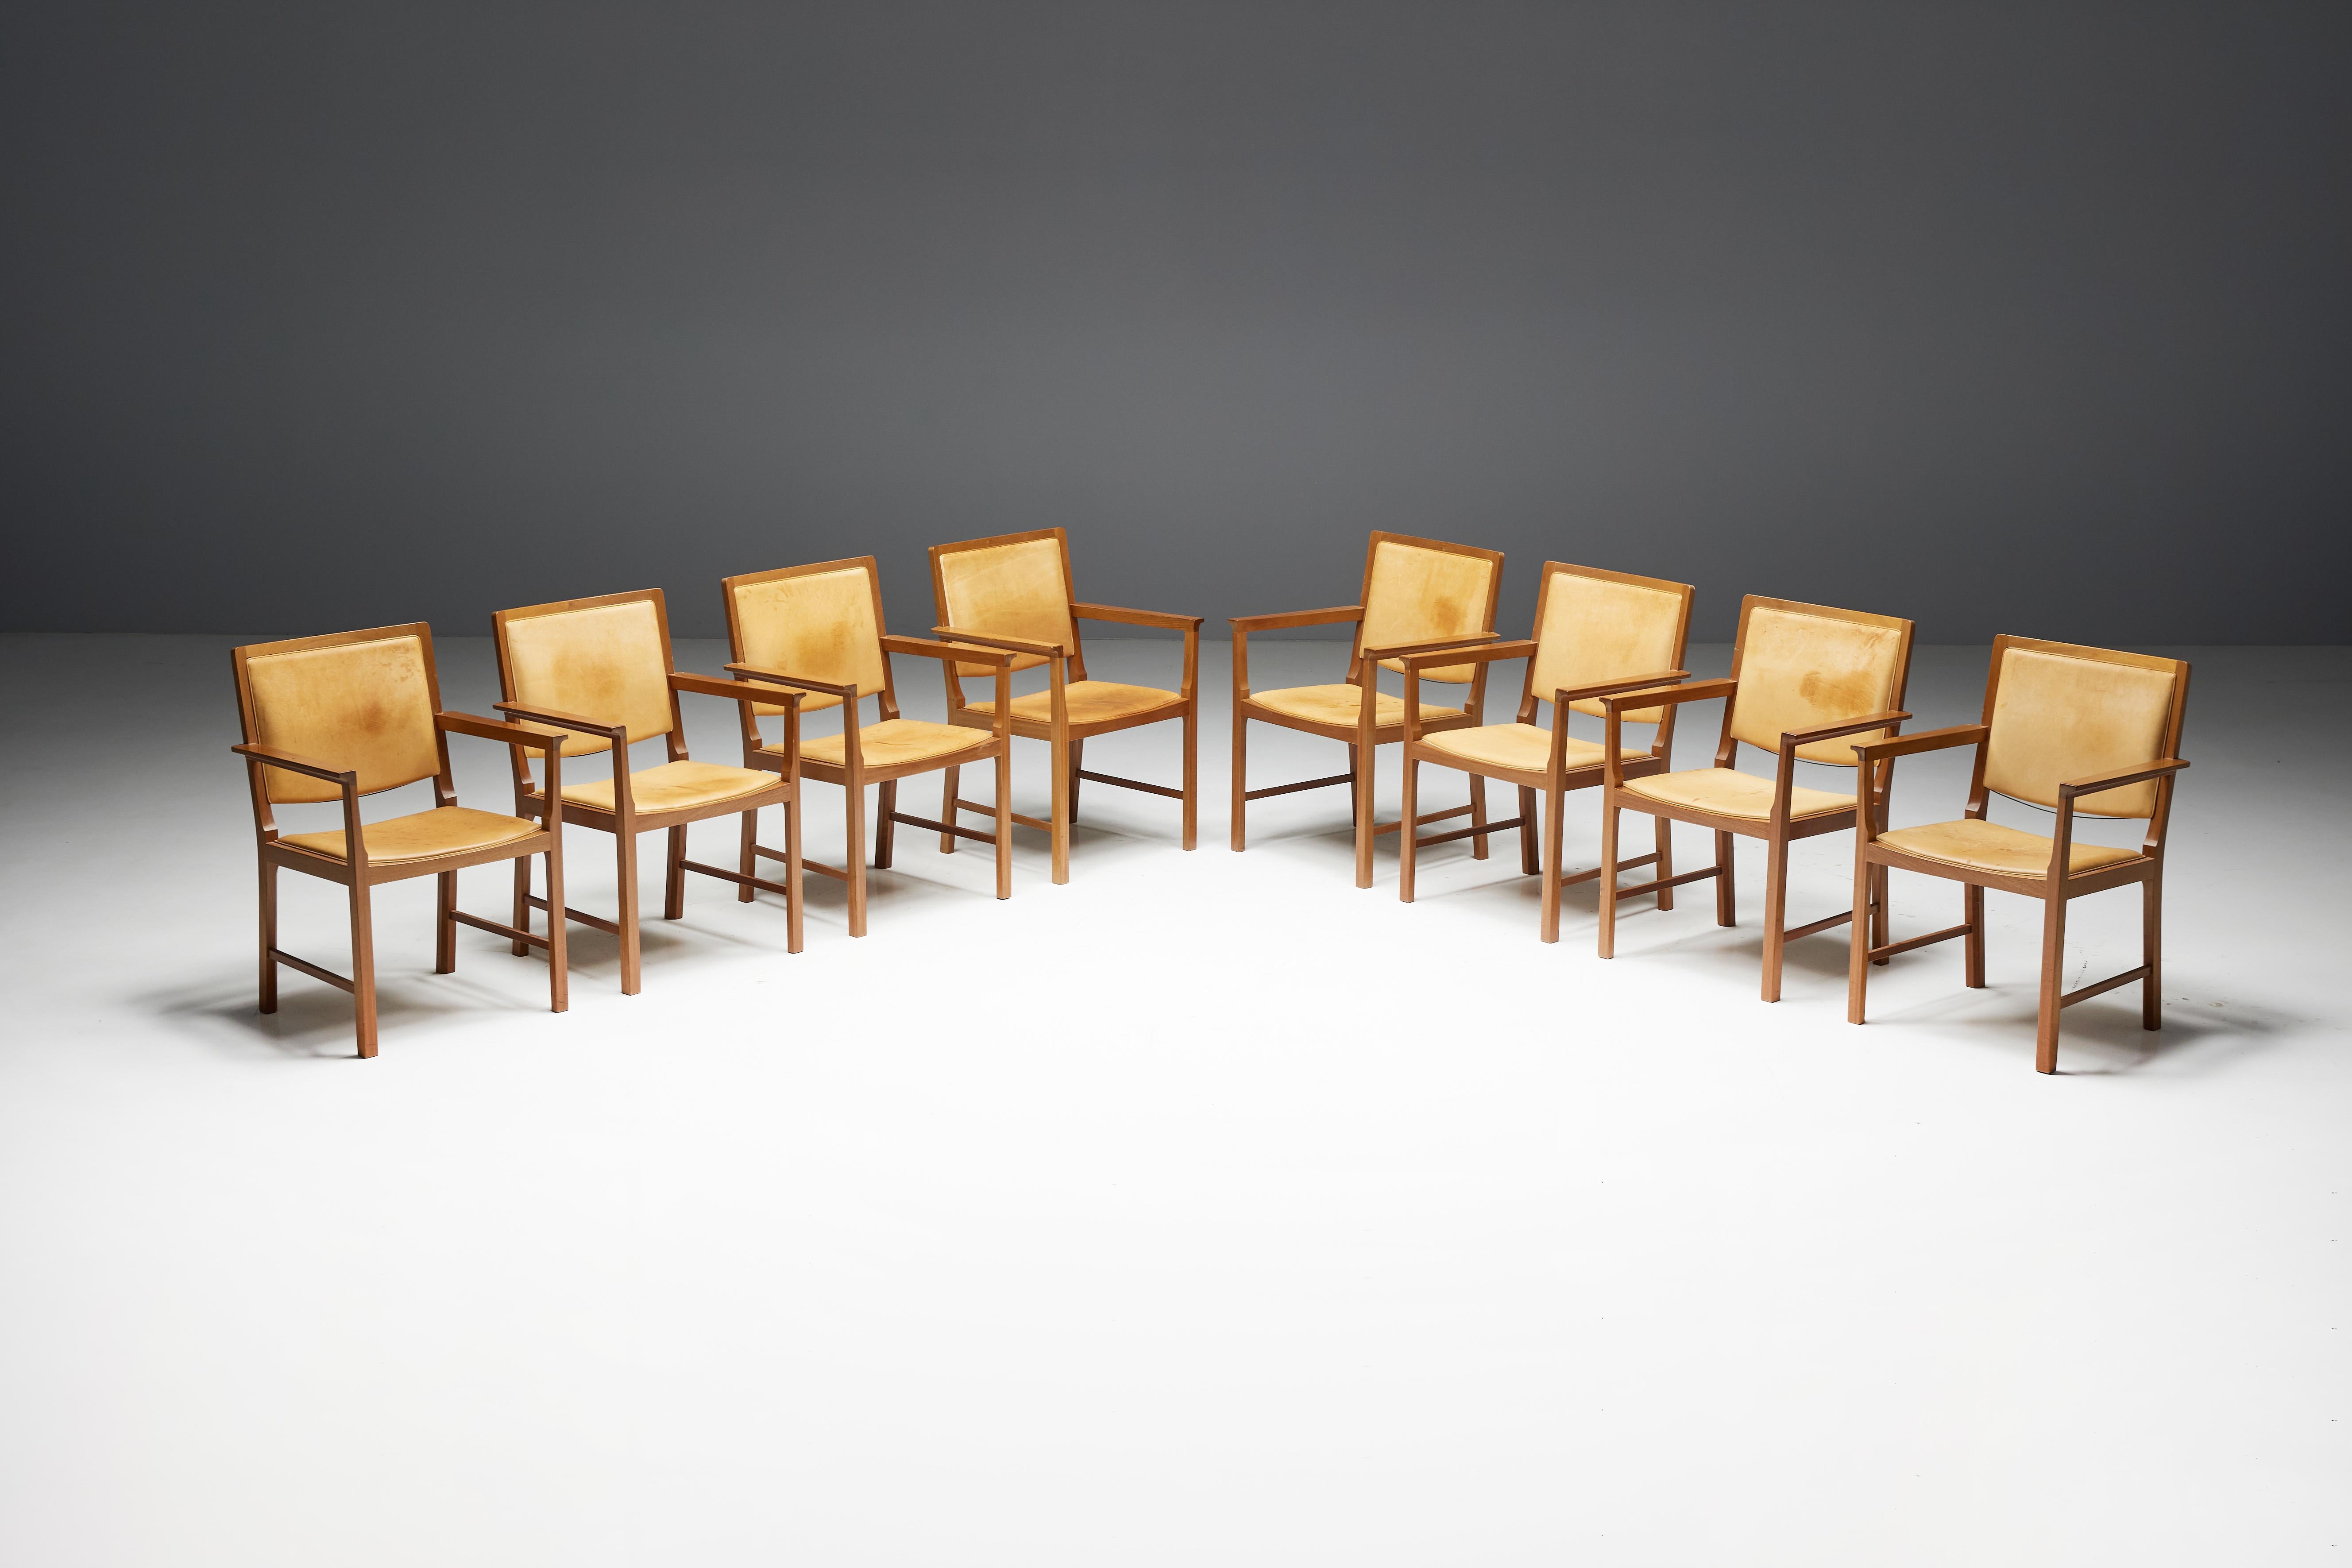 Skandinavische Konferenzstühle, die aus einer harmonischen Mischung aus Naturleder und Holz gefertigt sind. Jeder Stuhl ist mit luxuriösem, patiniertem Naturleder gepolstert und hat einen eleganten Holzrahmen. Die Stühle sind in neun Exemplaren